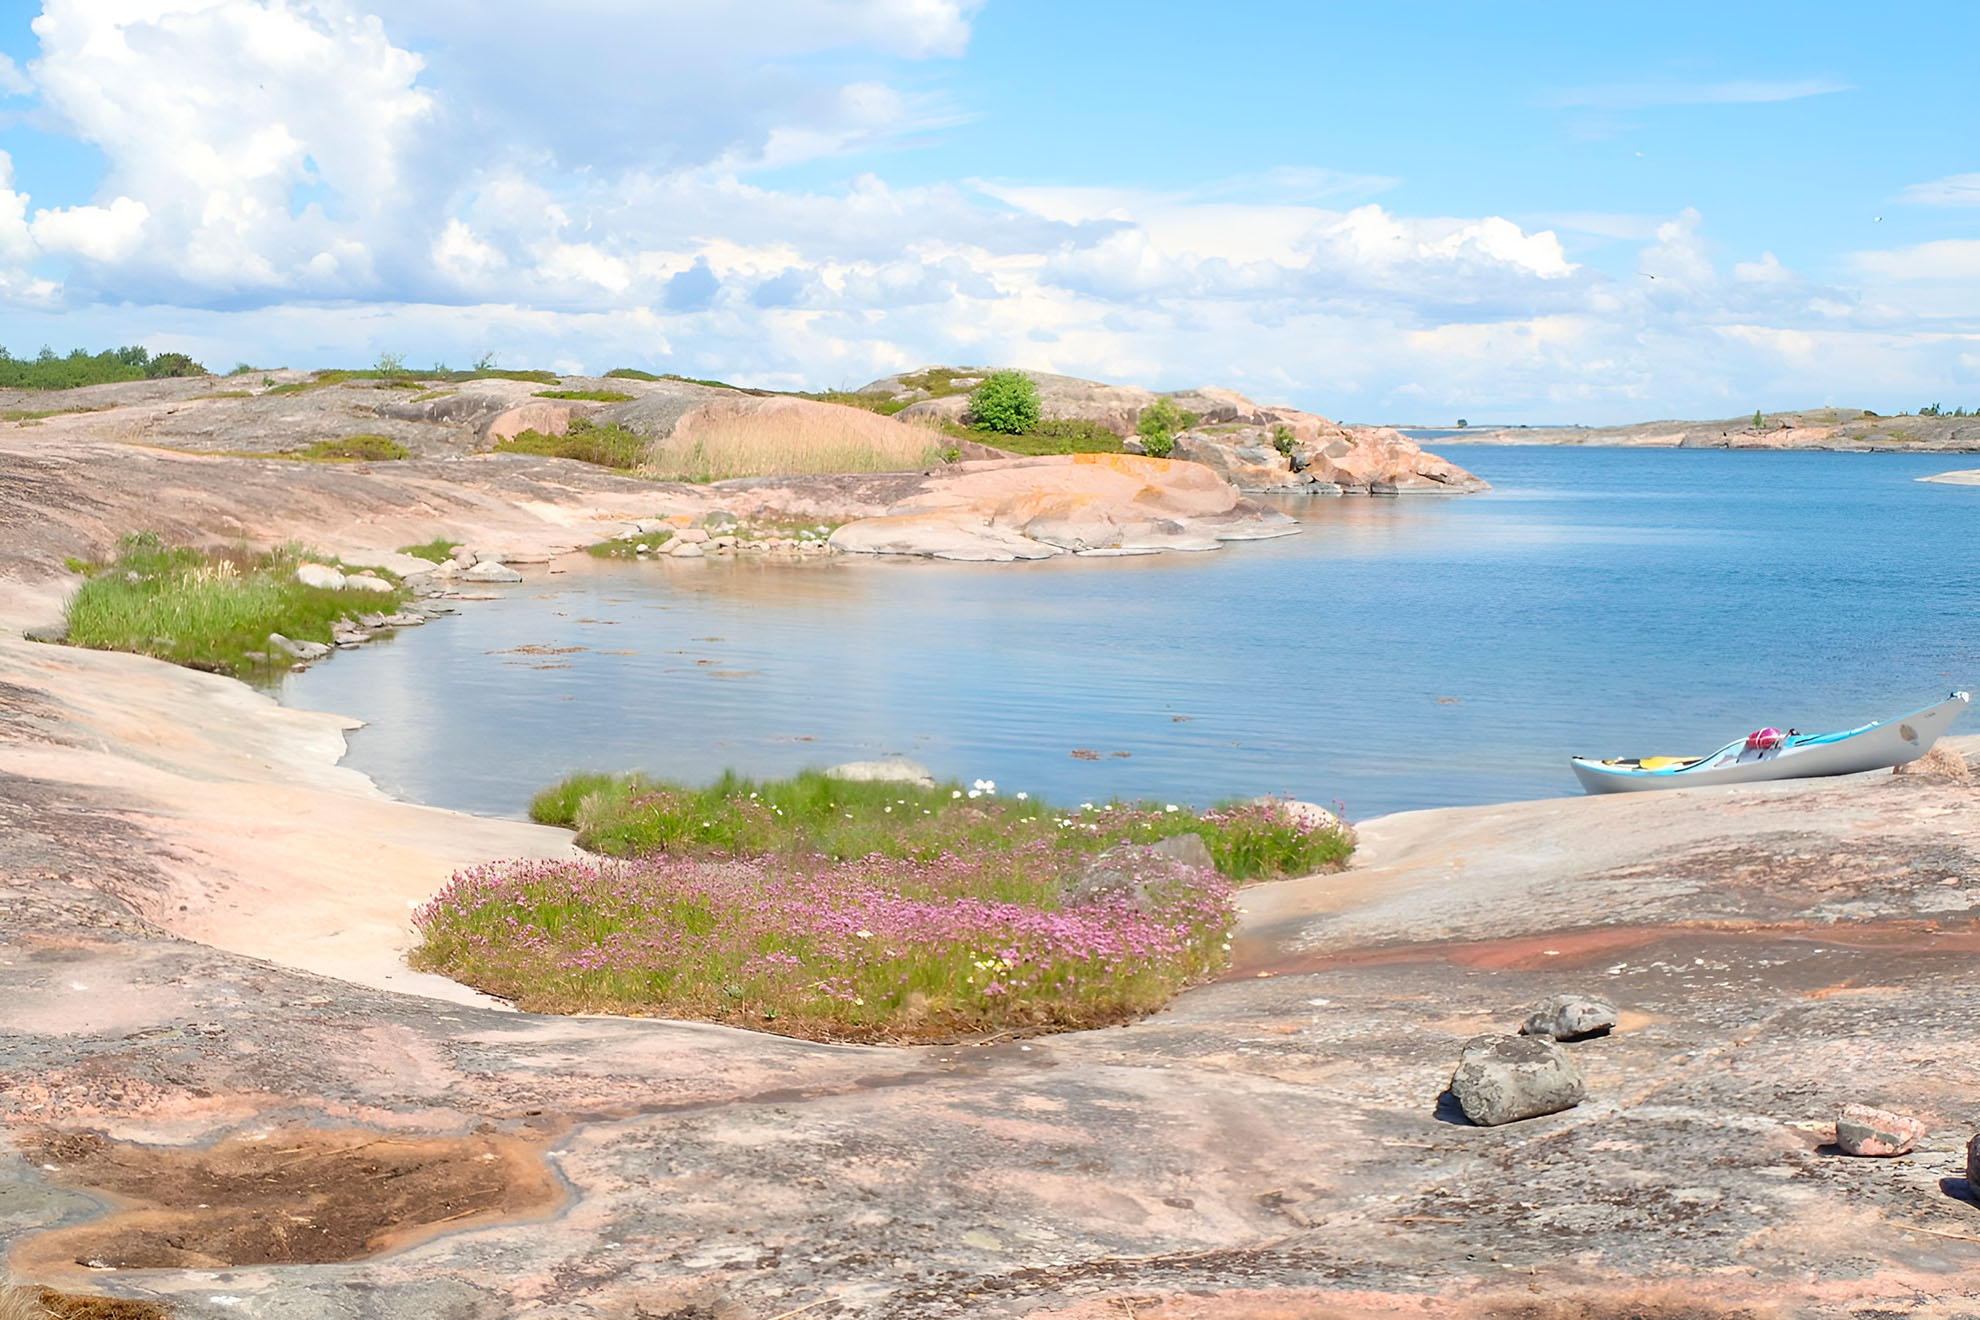 Ett vackert pastellfärgat havslandskap med en kajak på stranden.